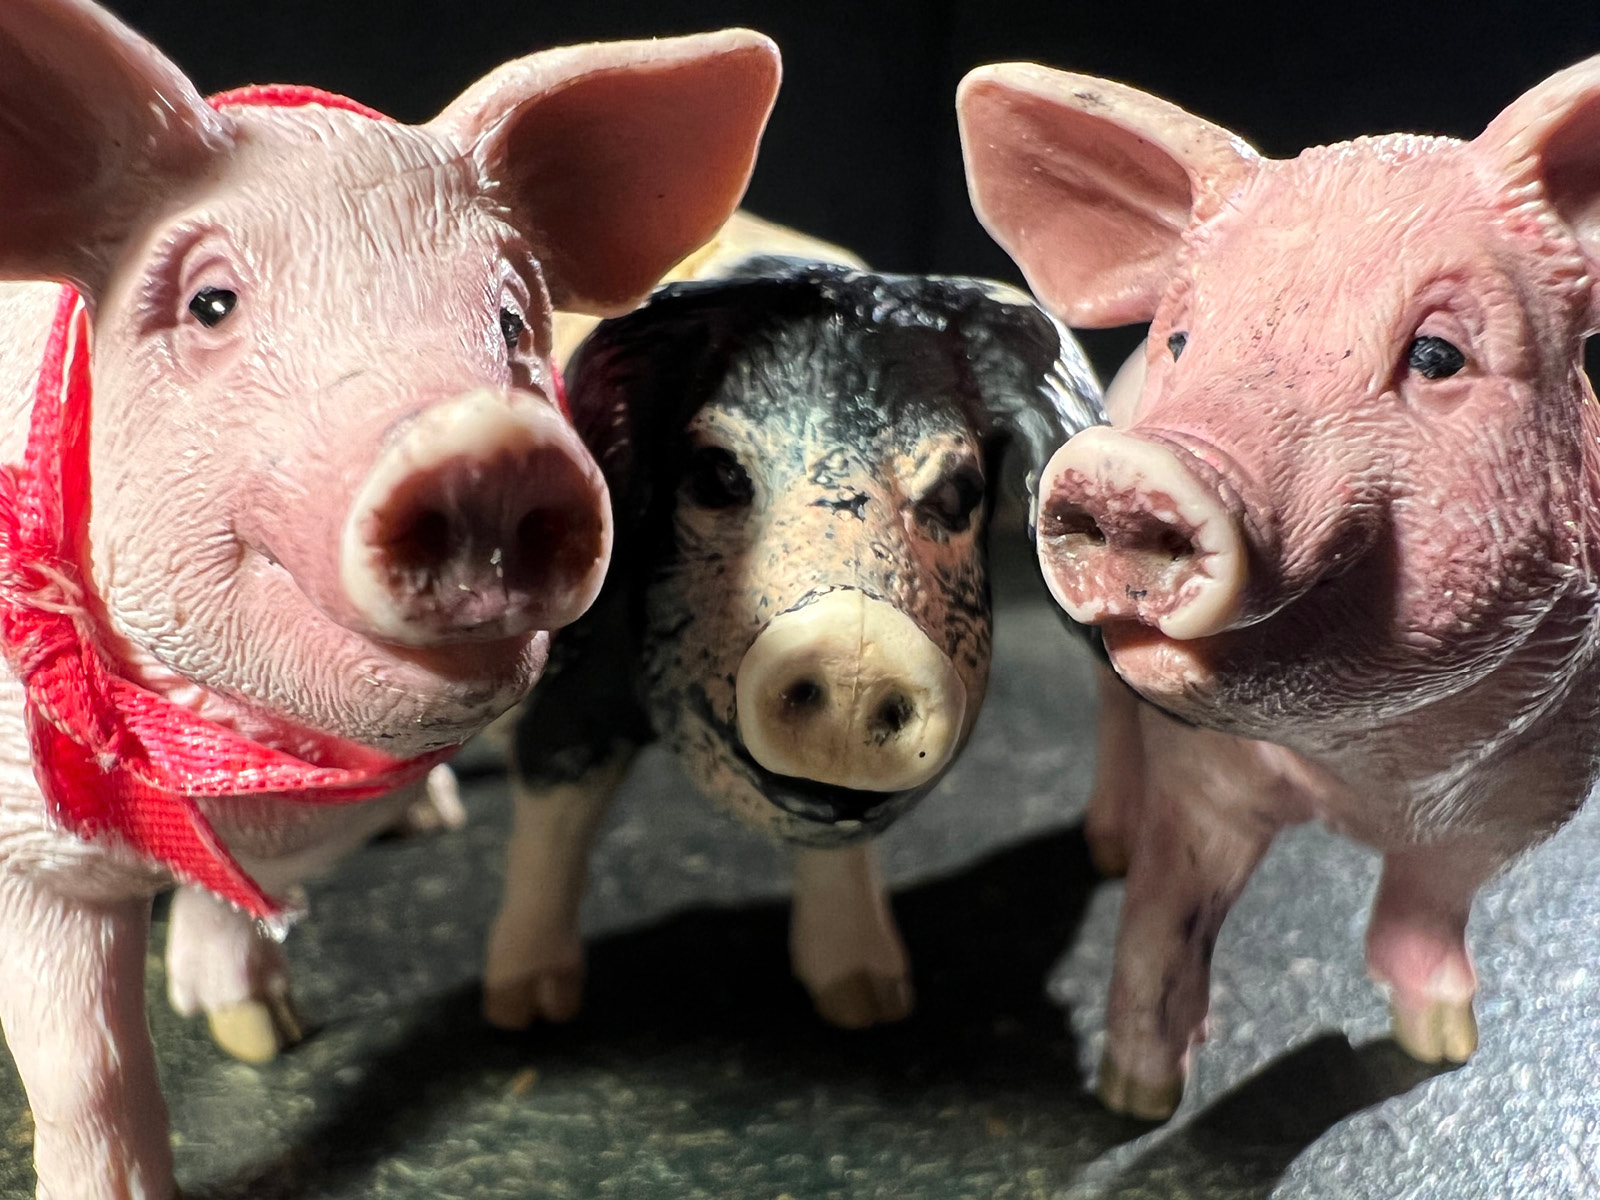 Die Figuren von drei Schweinchen, zwei rosa, eins braun mit Schlappohren blicken freundlich in die Kamera. Ein Schweinchen trägt ein rotes Halstuch.